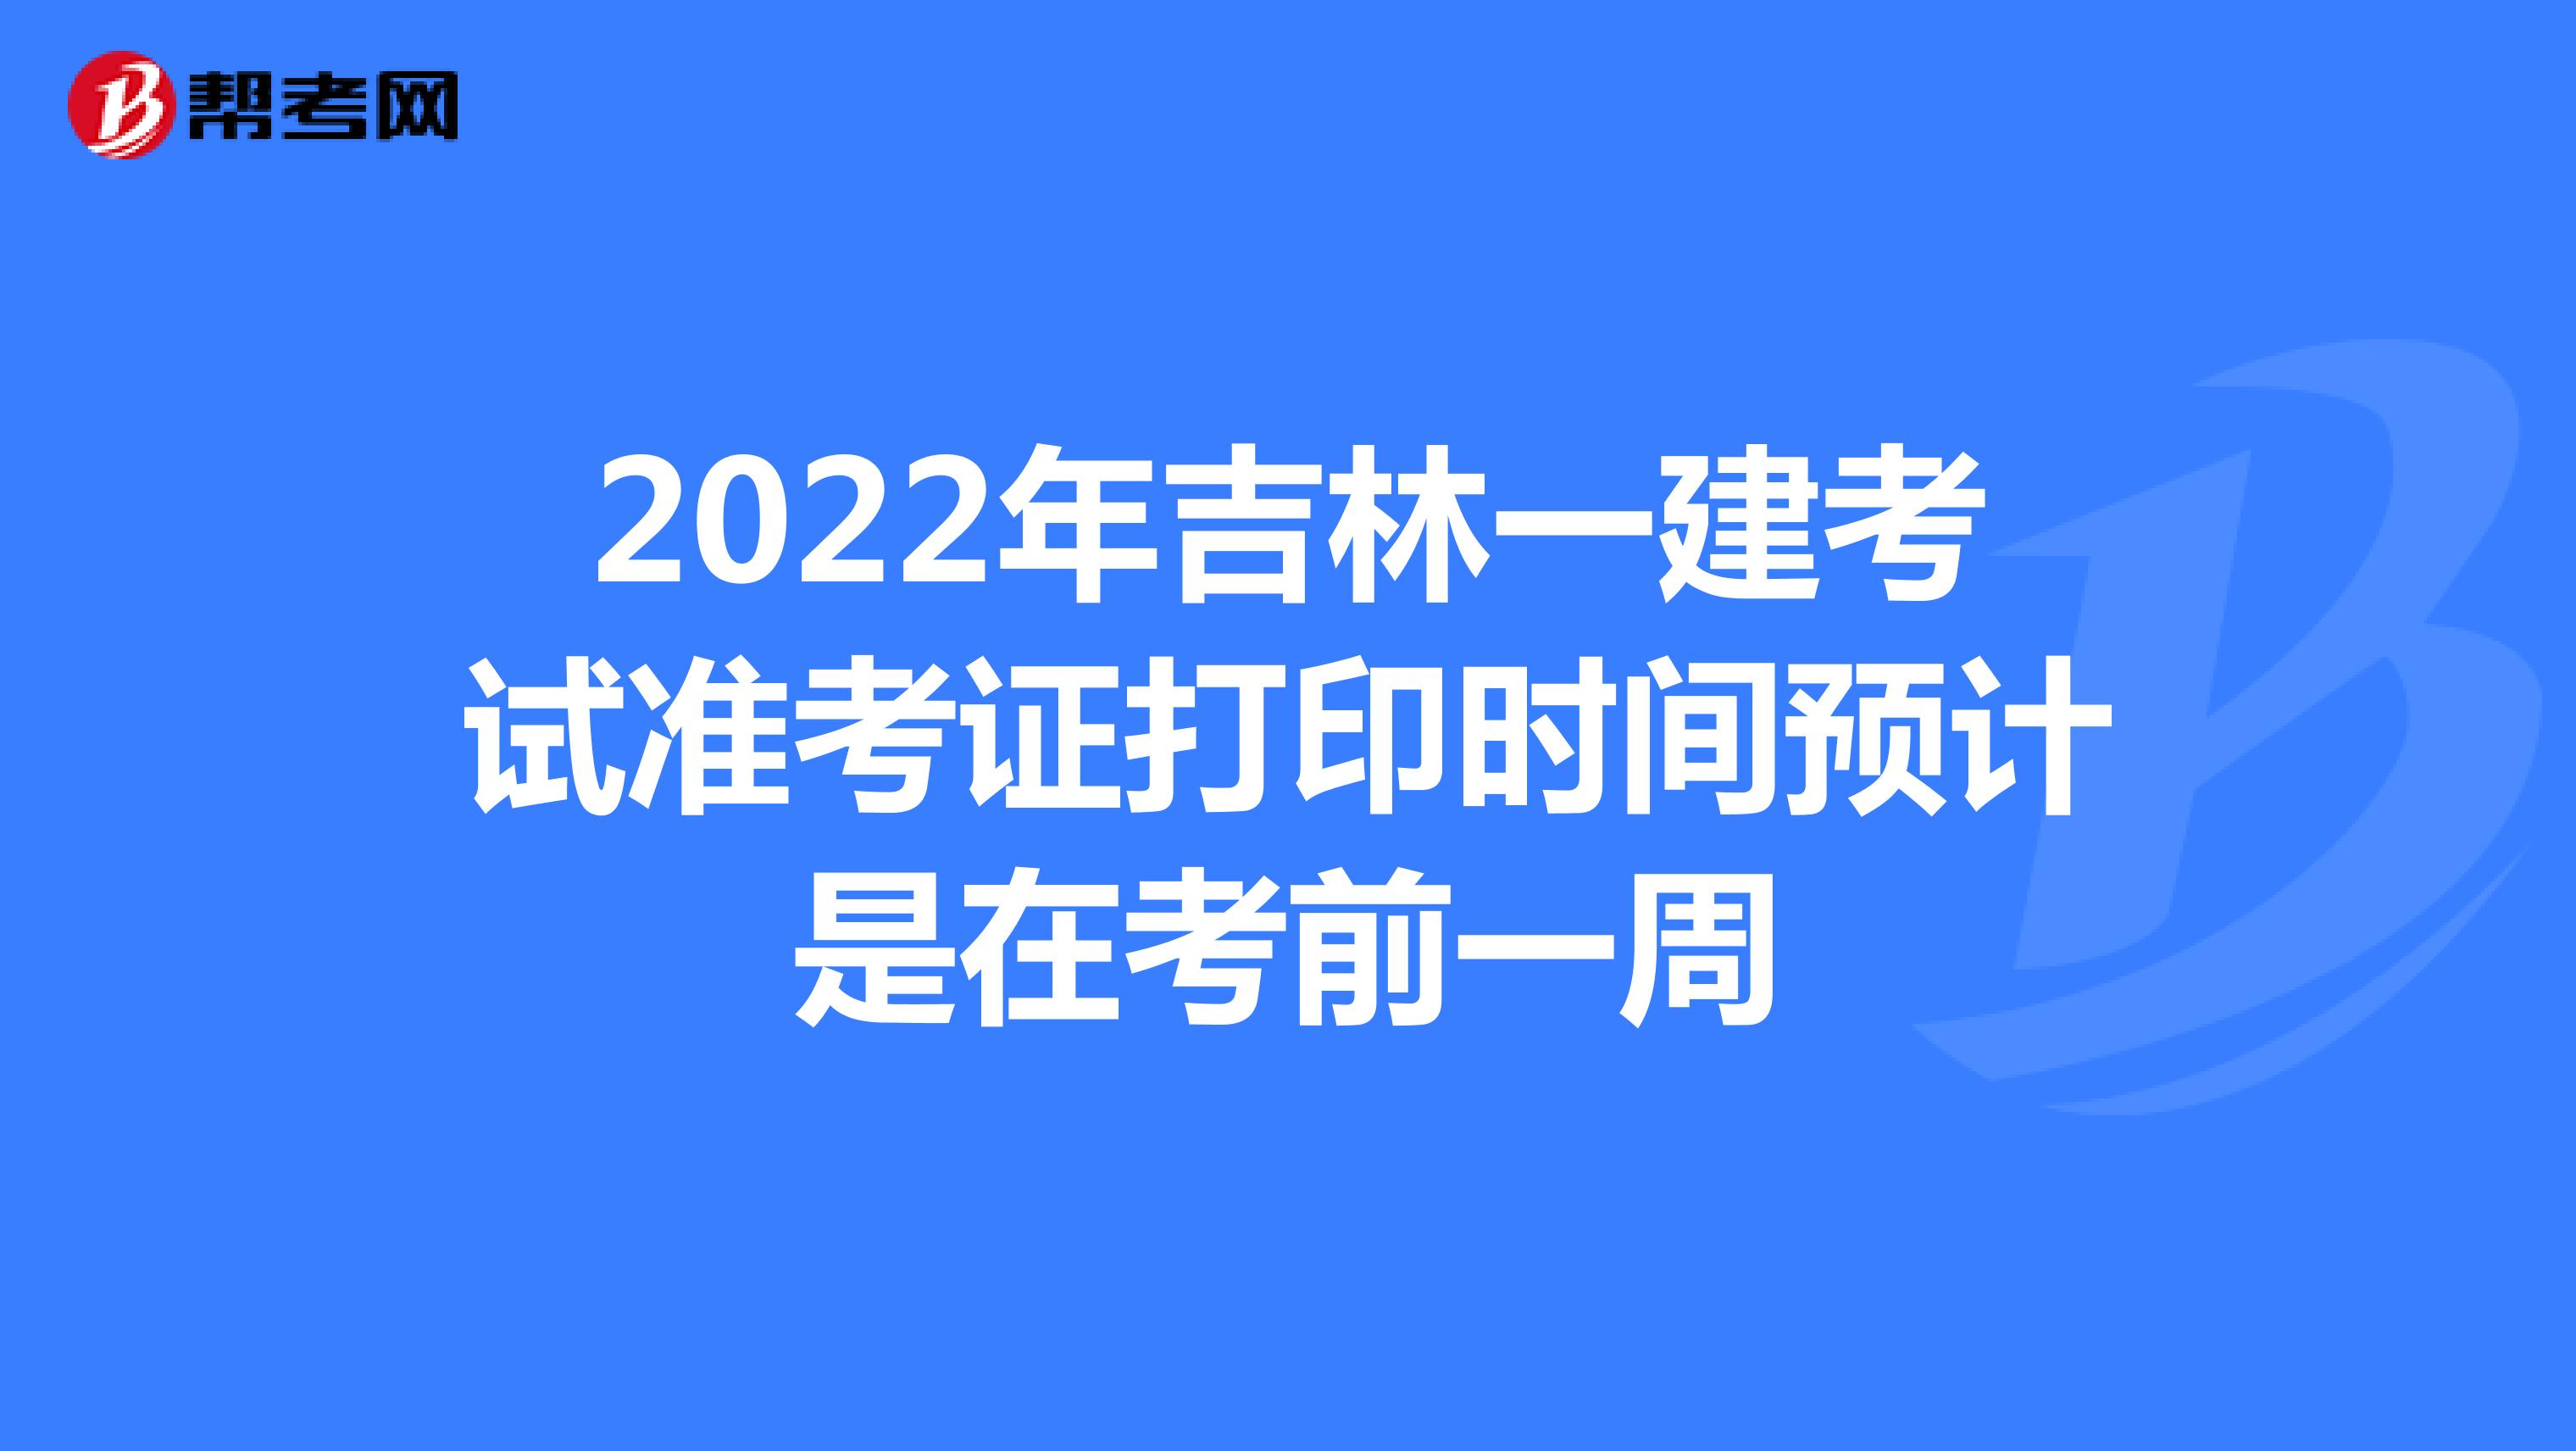 2022年吉林一建考试准考证打印时间预计是在考前一周